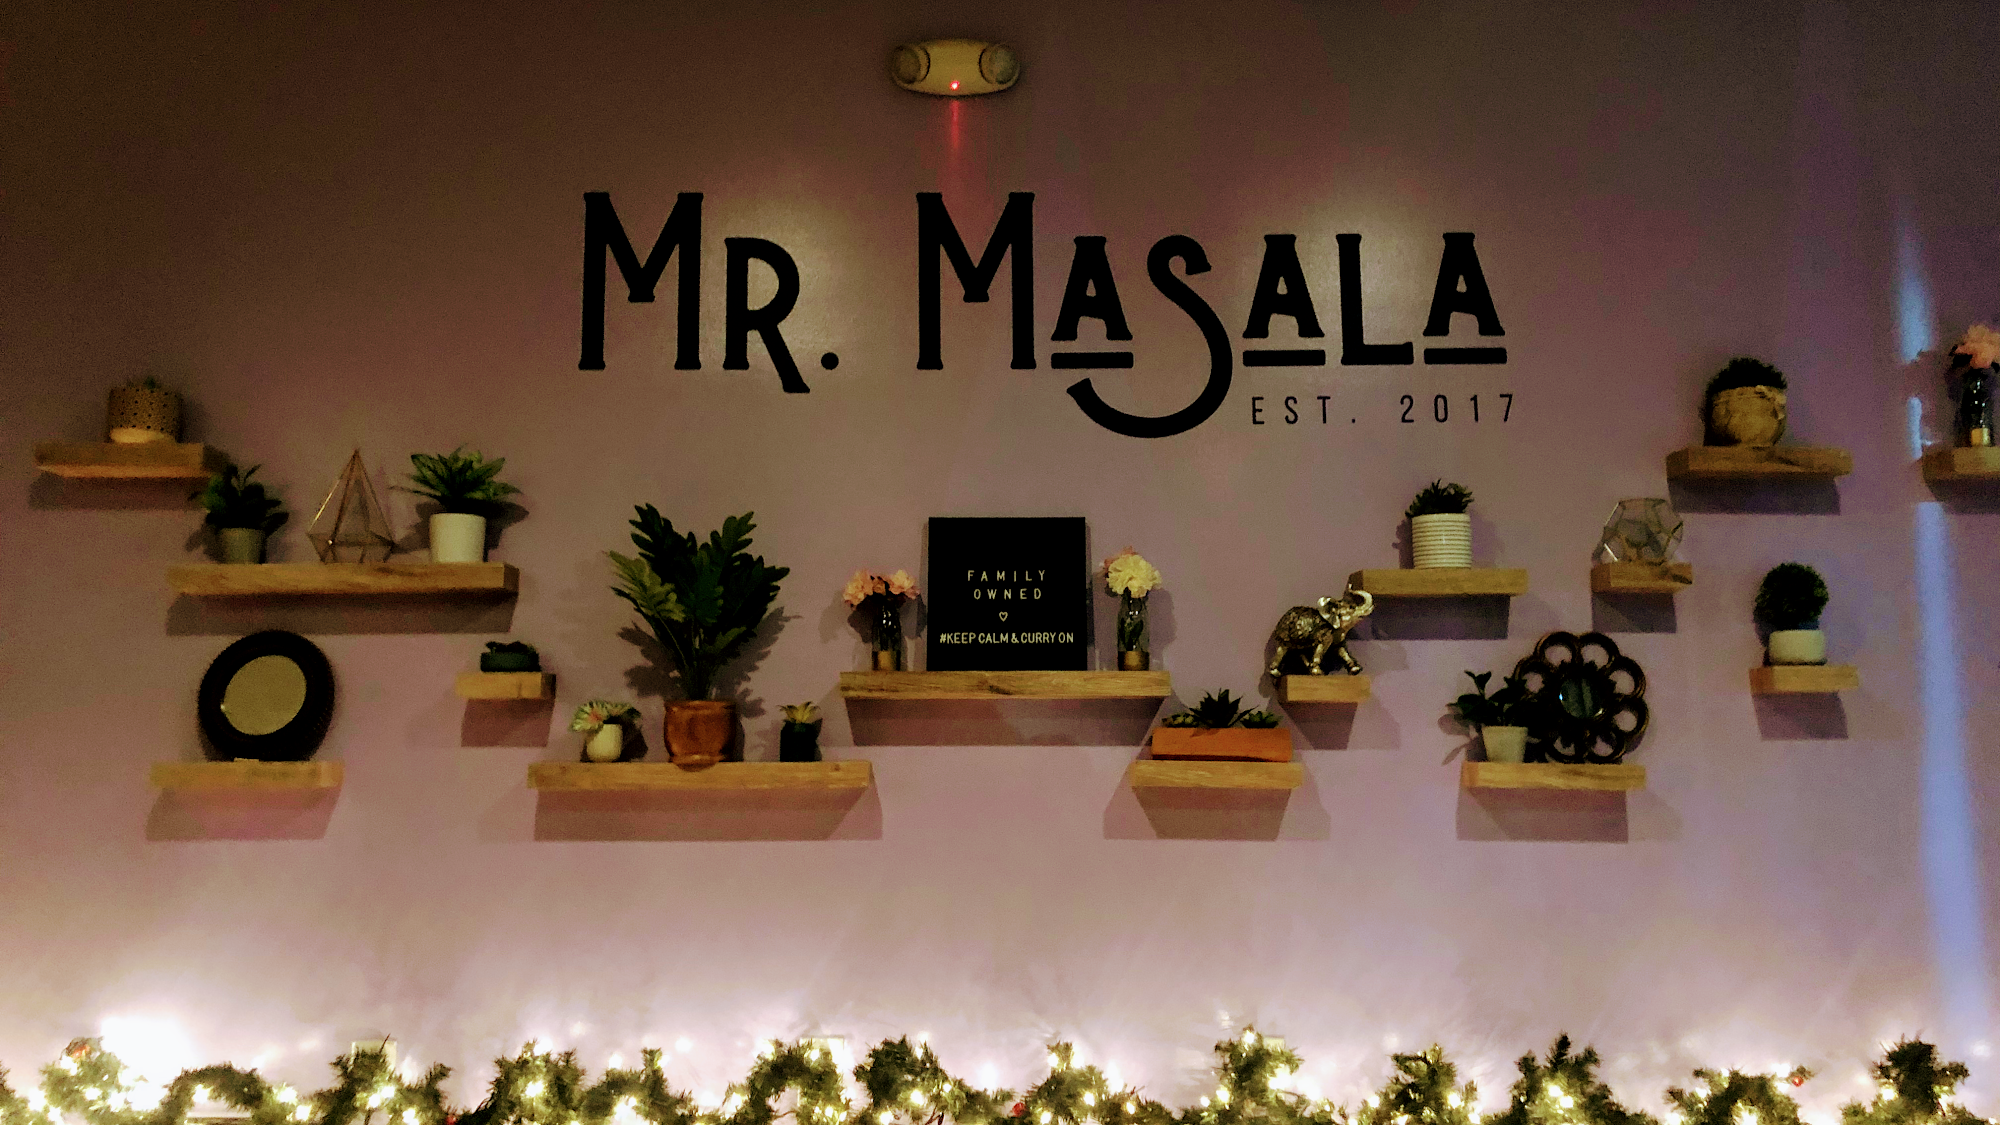 Mr. Masala